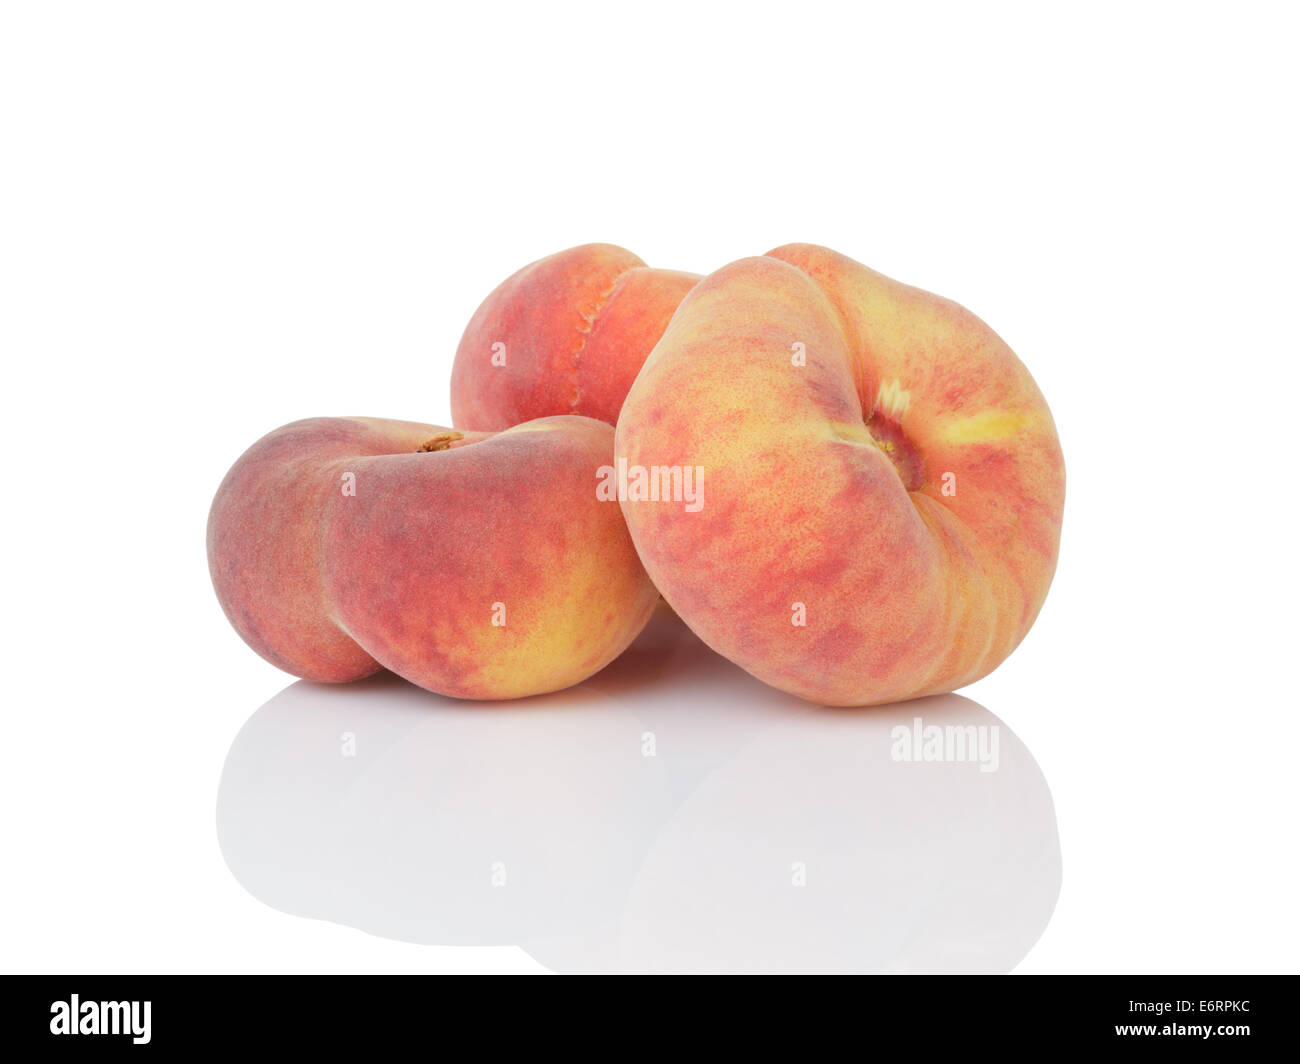 Персик форма женского органа. Персики плоские. Приплюснутый персик. Плоский фрукт похожий на персик. Персик плоской формы.